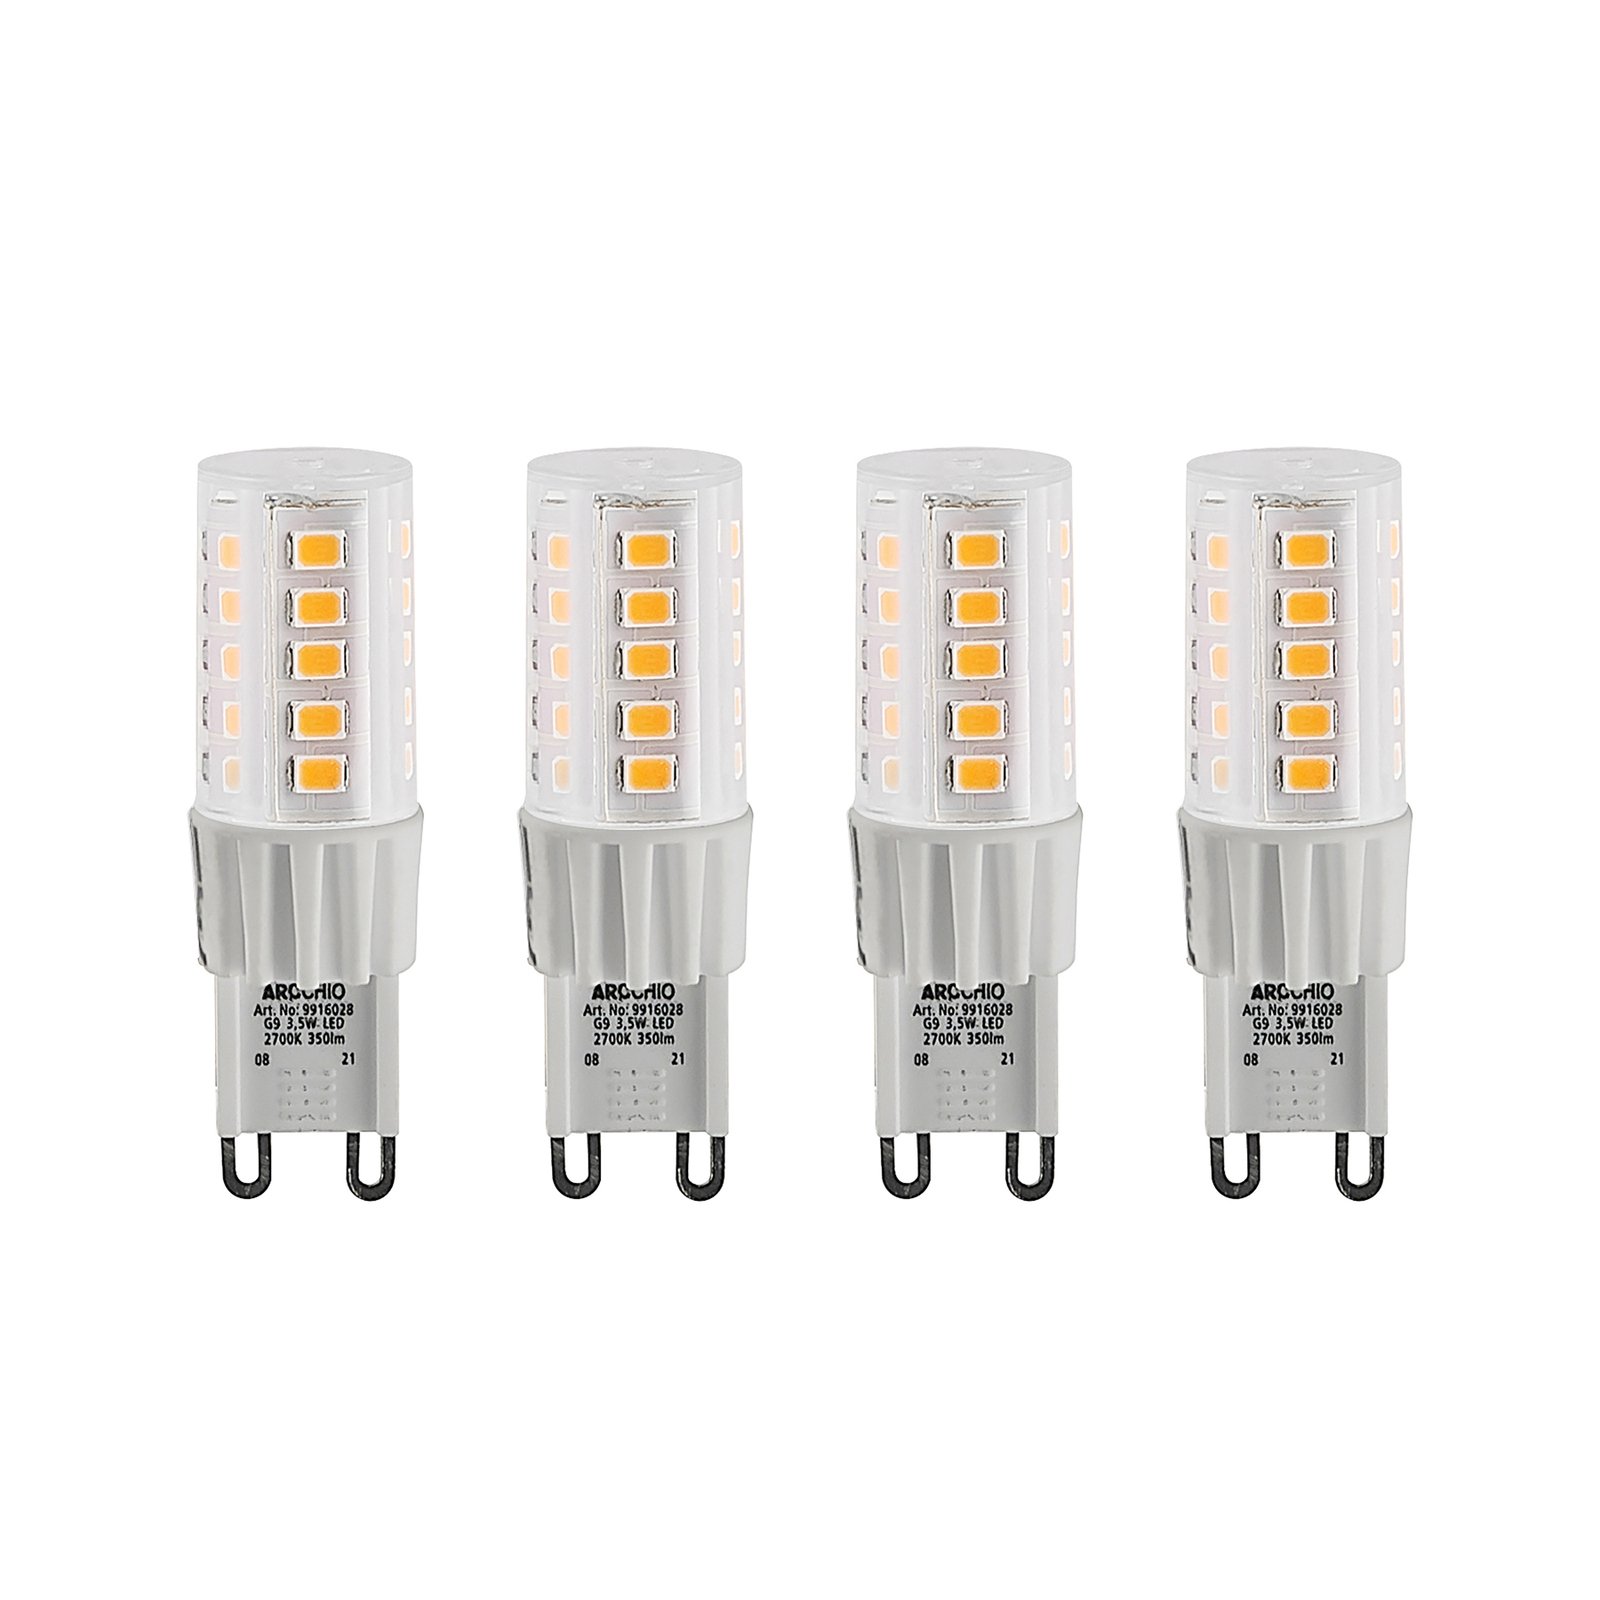 Arcchio bi-pin LED bulb G9 3.5 W 827 4-pack